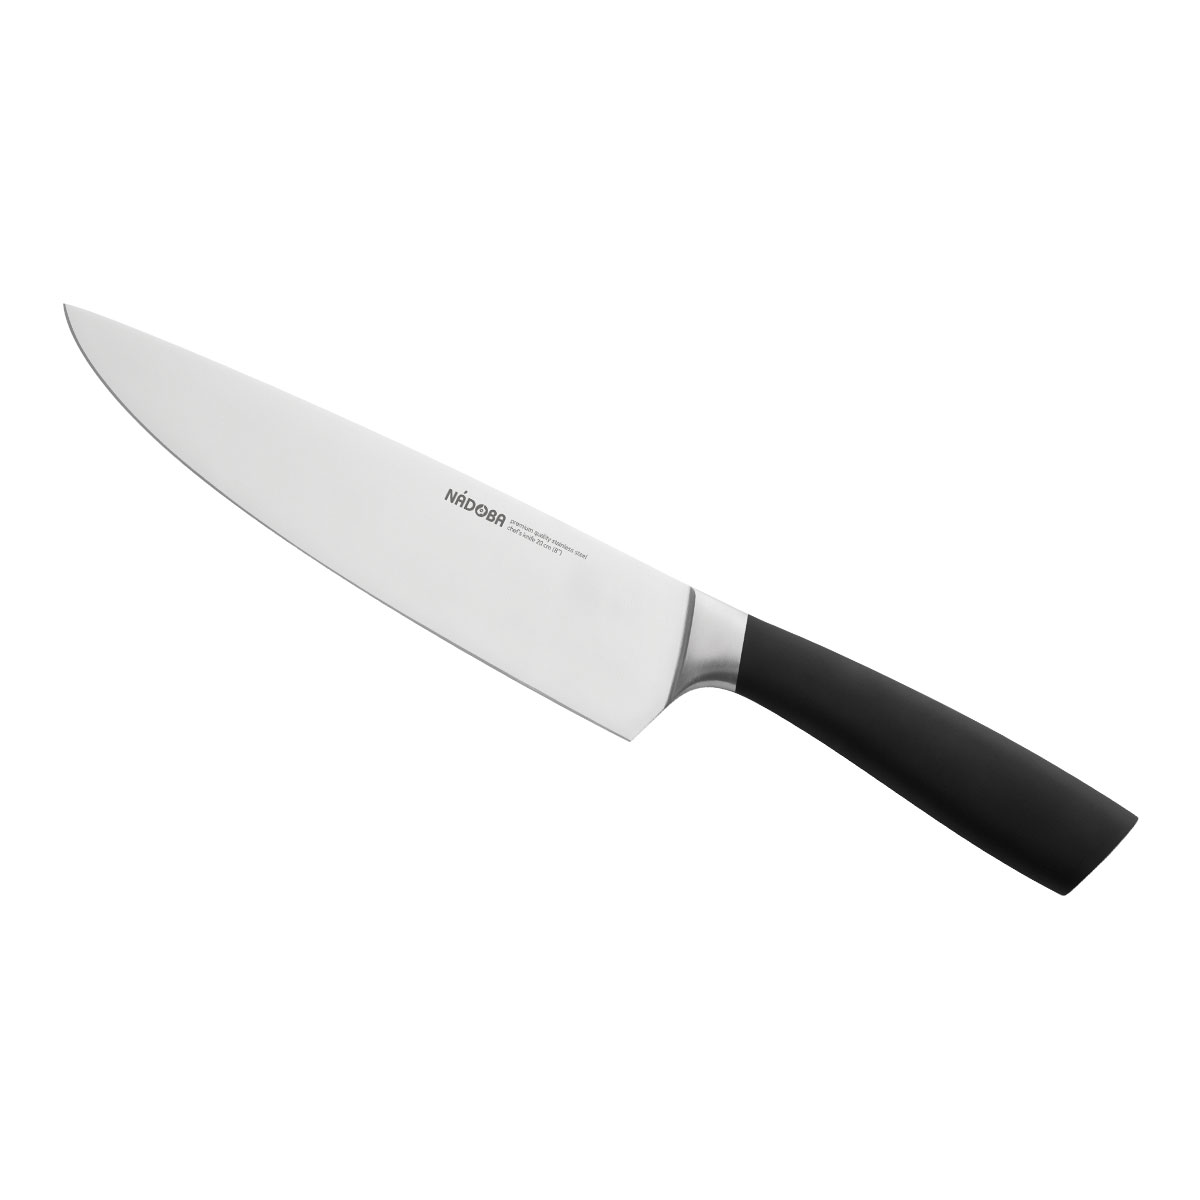 Нож Nadoba поварской 723910, 20 см нож eikaso ergo поварской 21 см